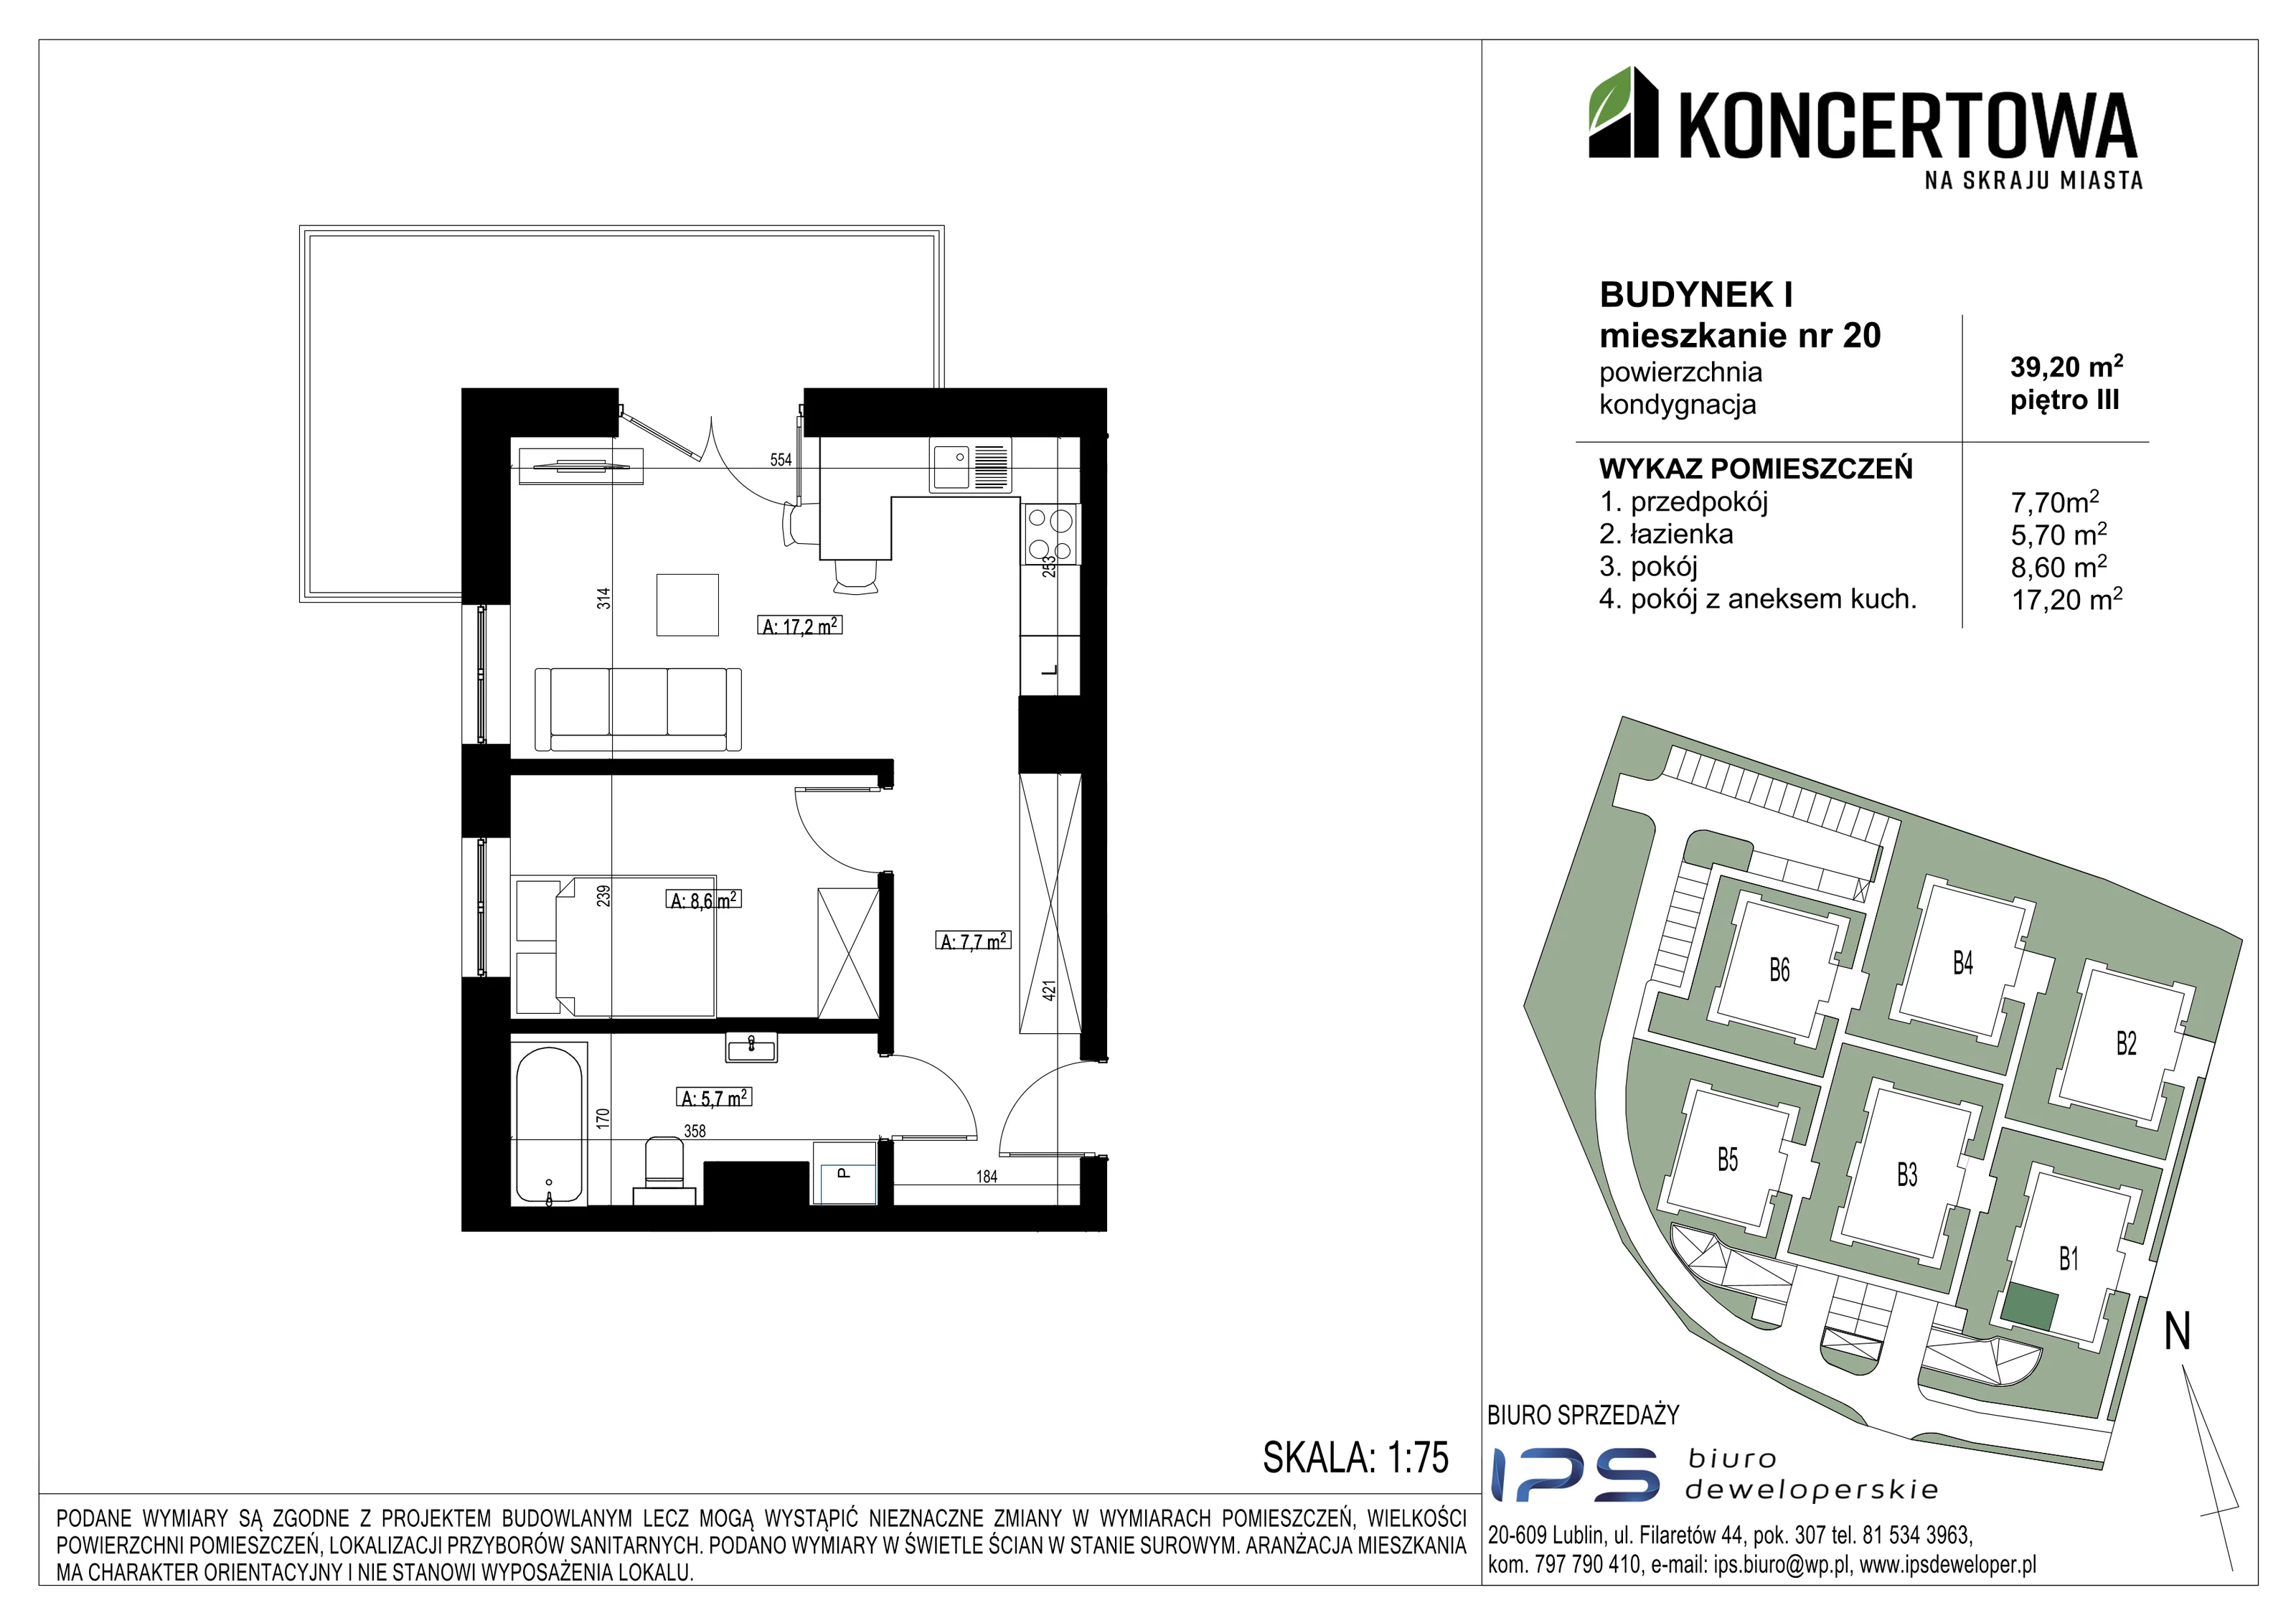 Mieszkanie 39,20 m², piętro 3, oferta nr 2_I/20, KONCERTOWA - Na skraju miasta, Lublin, Czechów Północny, Czechów Północny,  ul. Koncertowa